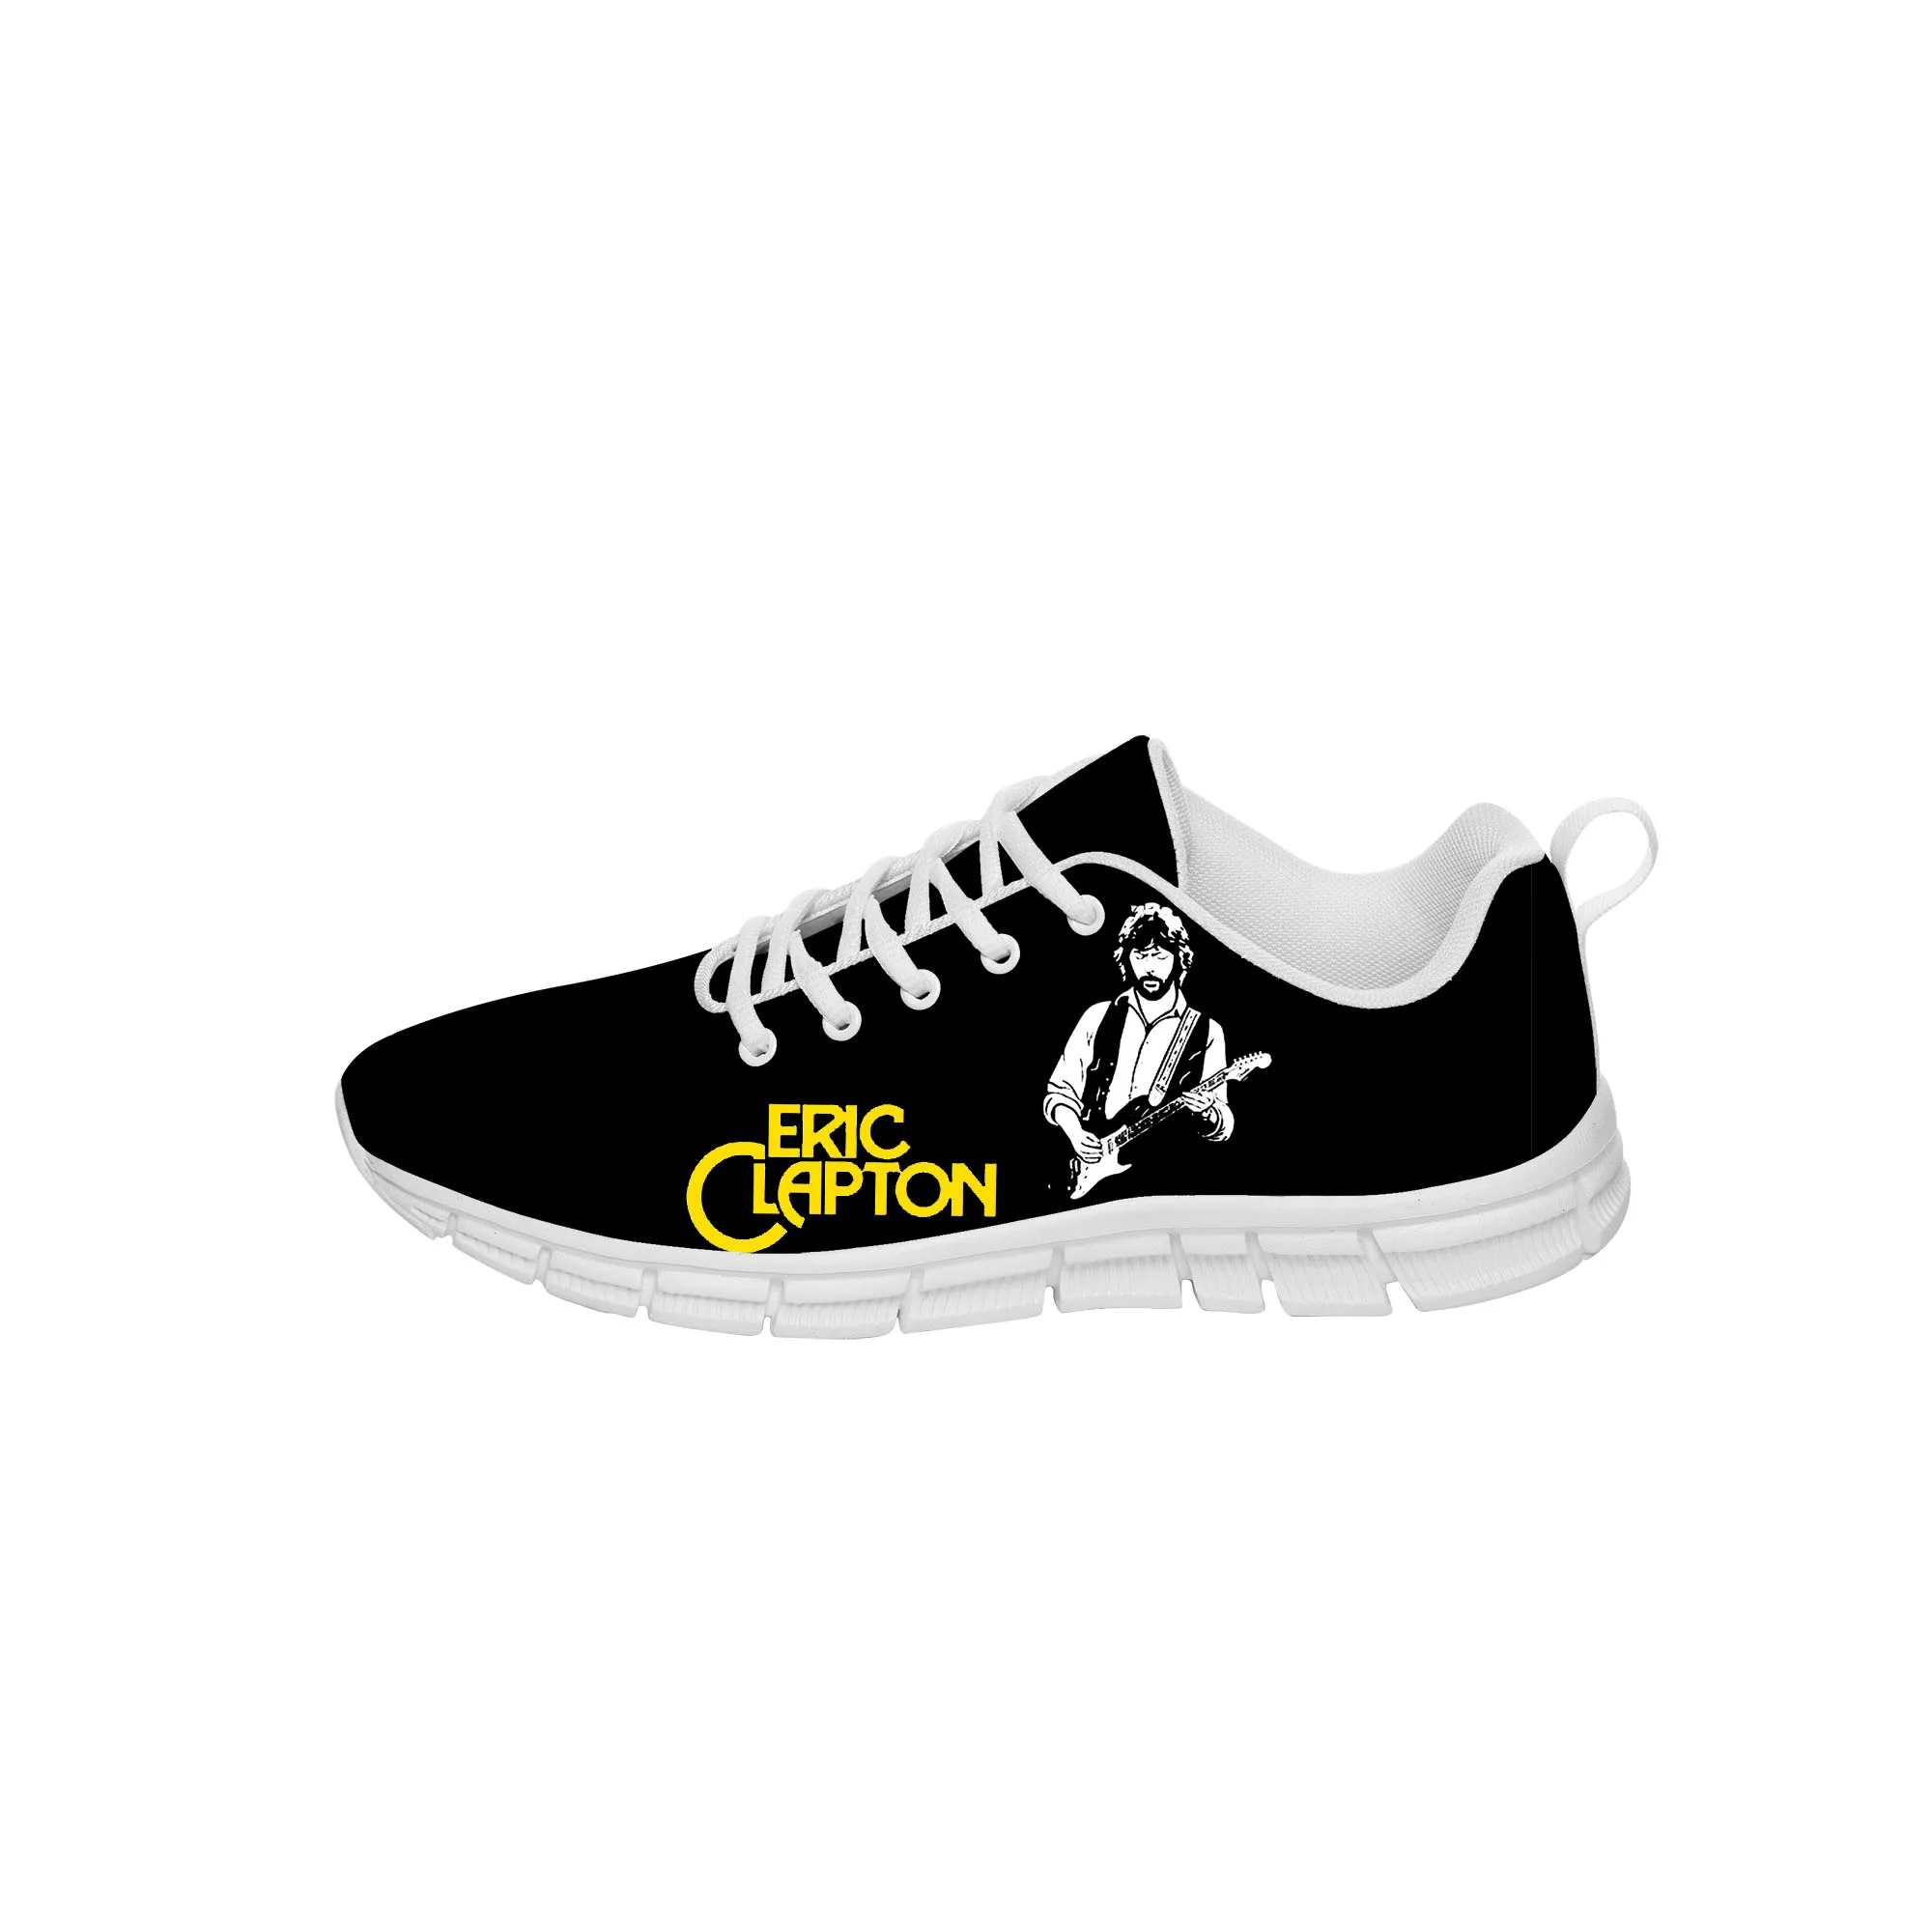 

Кроссовки унисекс Эрик Клэптон, повседневная Тканевая обувь для подростков, холщовые беговые туфли, дышащая легкая обувь с 3D принтом, белые